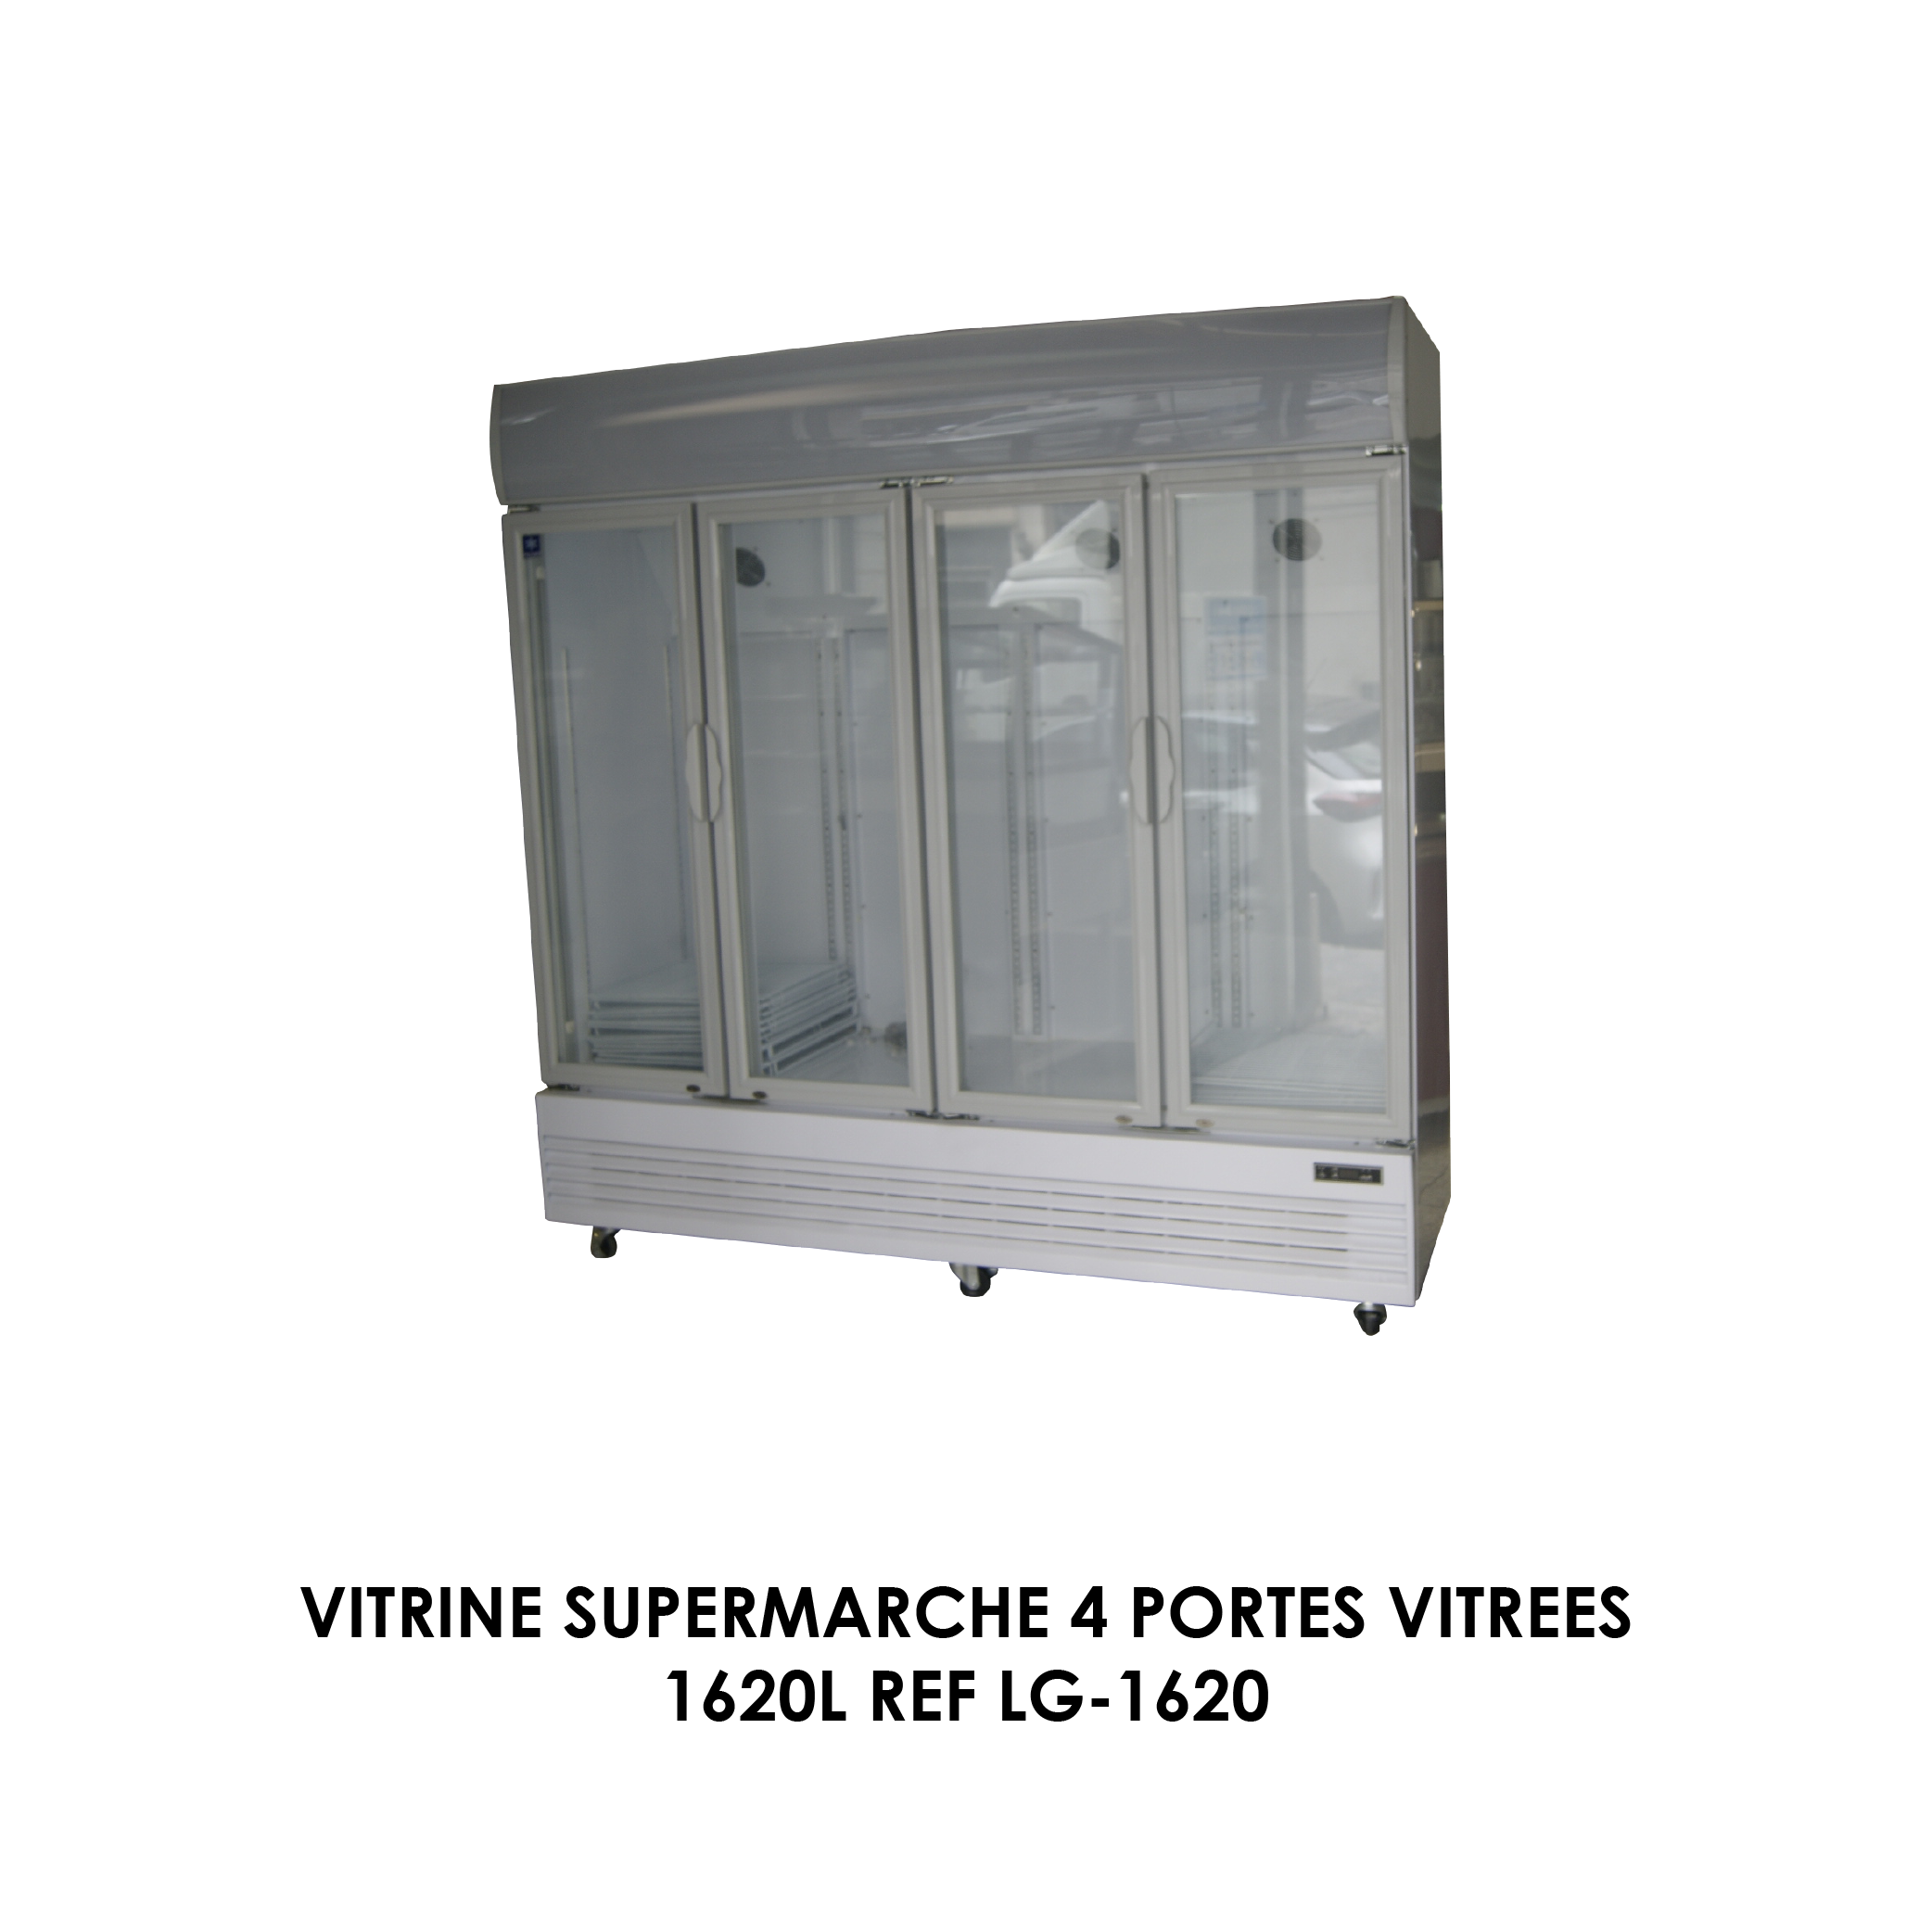 VITRINE SUPERMARCHE 4 PORTES VITREES 1620L REF LG-1620